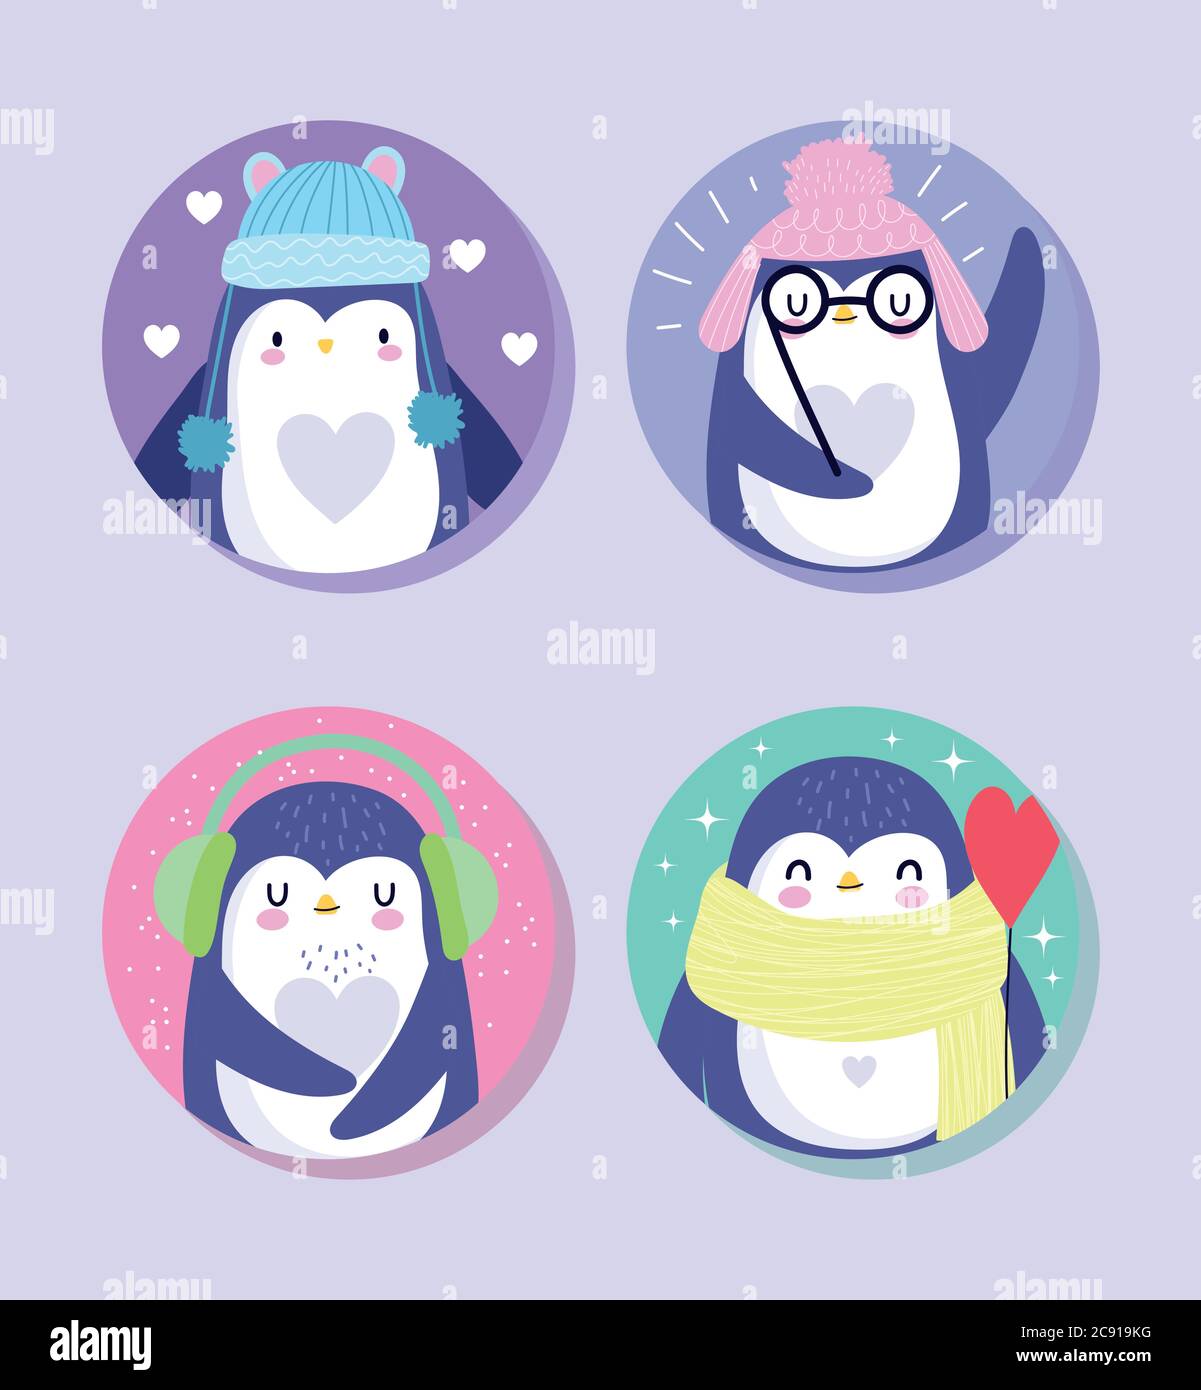 pingouins animal dessin animé faune avec chapeaux chauds foulard lunettes personnages illustration vectorielle Illustration de Vecteur